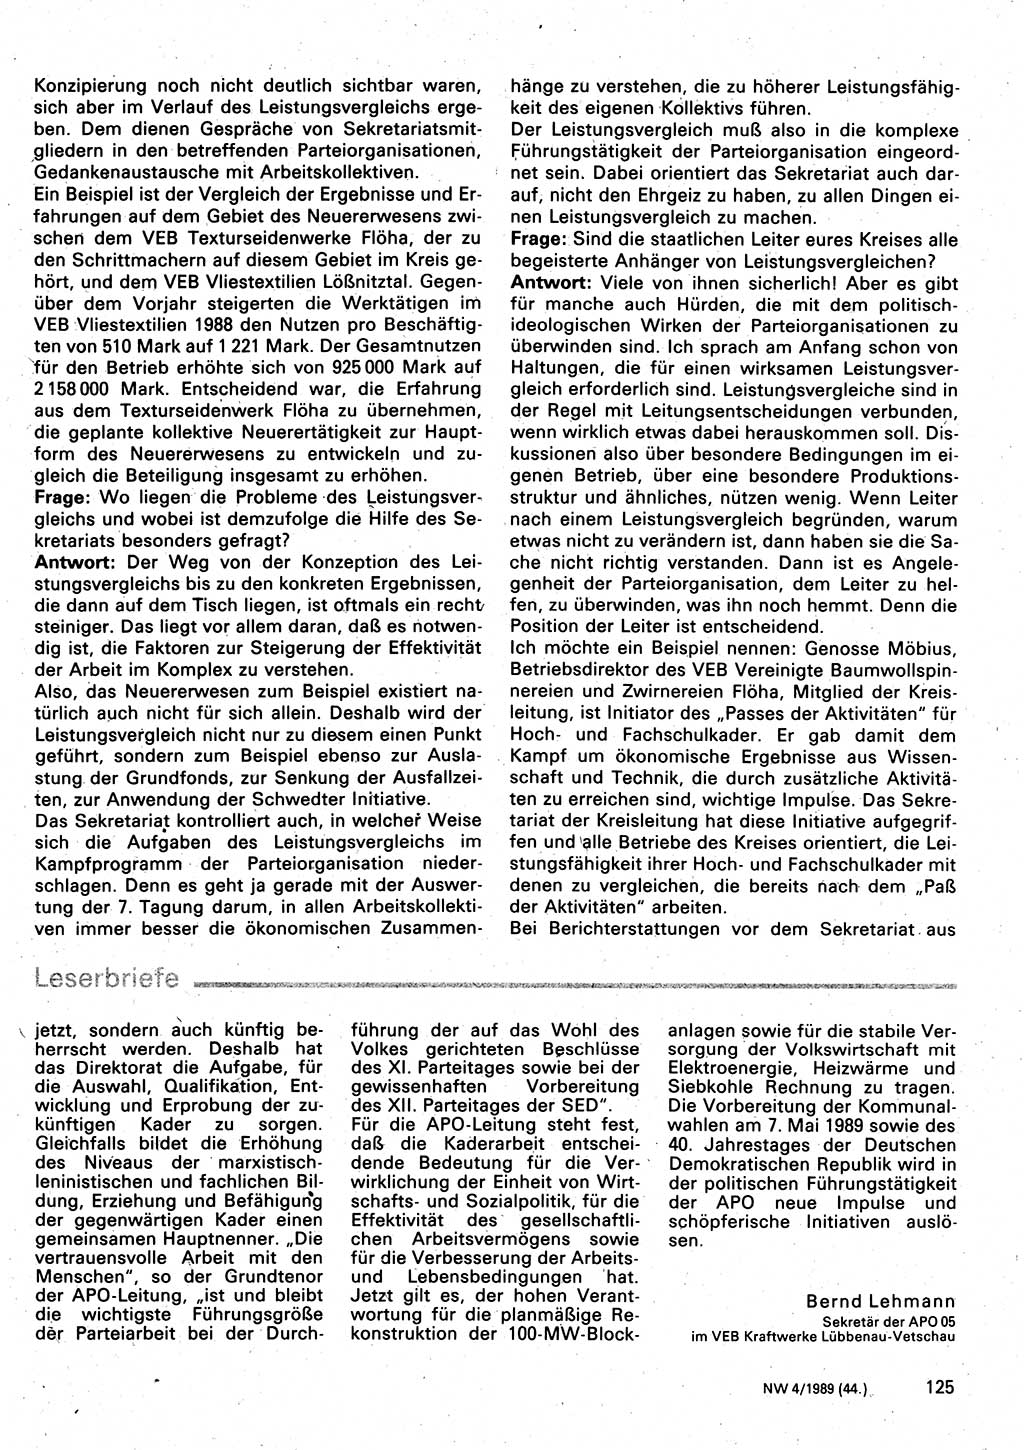 Neuer Weg (NW), Organ des Zentralkomitees (ZK) der SED (Sozialistische Einheitspartei Deutschlands) für Fragen des Parteilebens, 44. Jahrgang [Deutsche Demokratische Republik (DDR)] 1989, Seite 125 (NW ZK SED DDR 1989, S. 125)